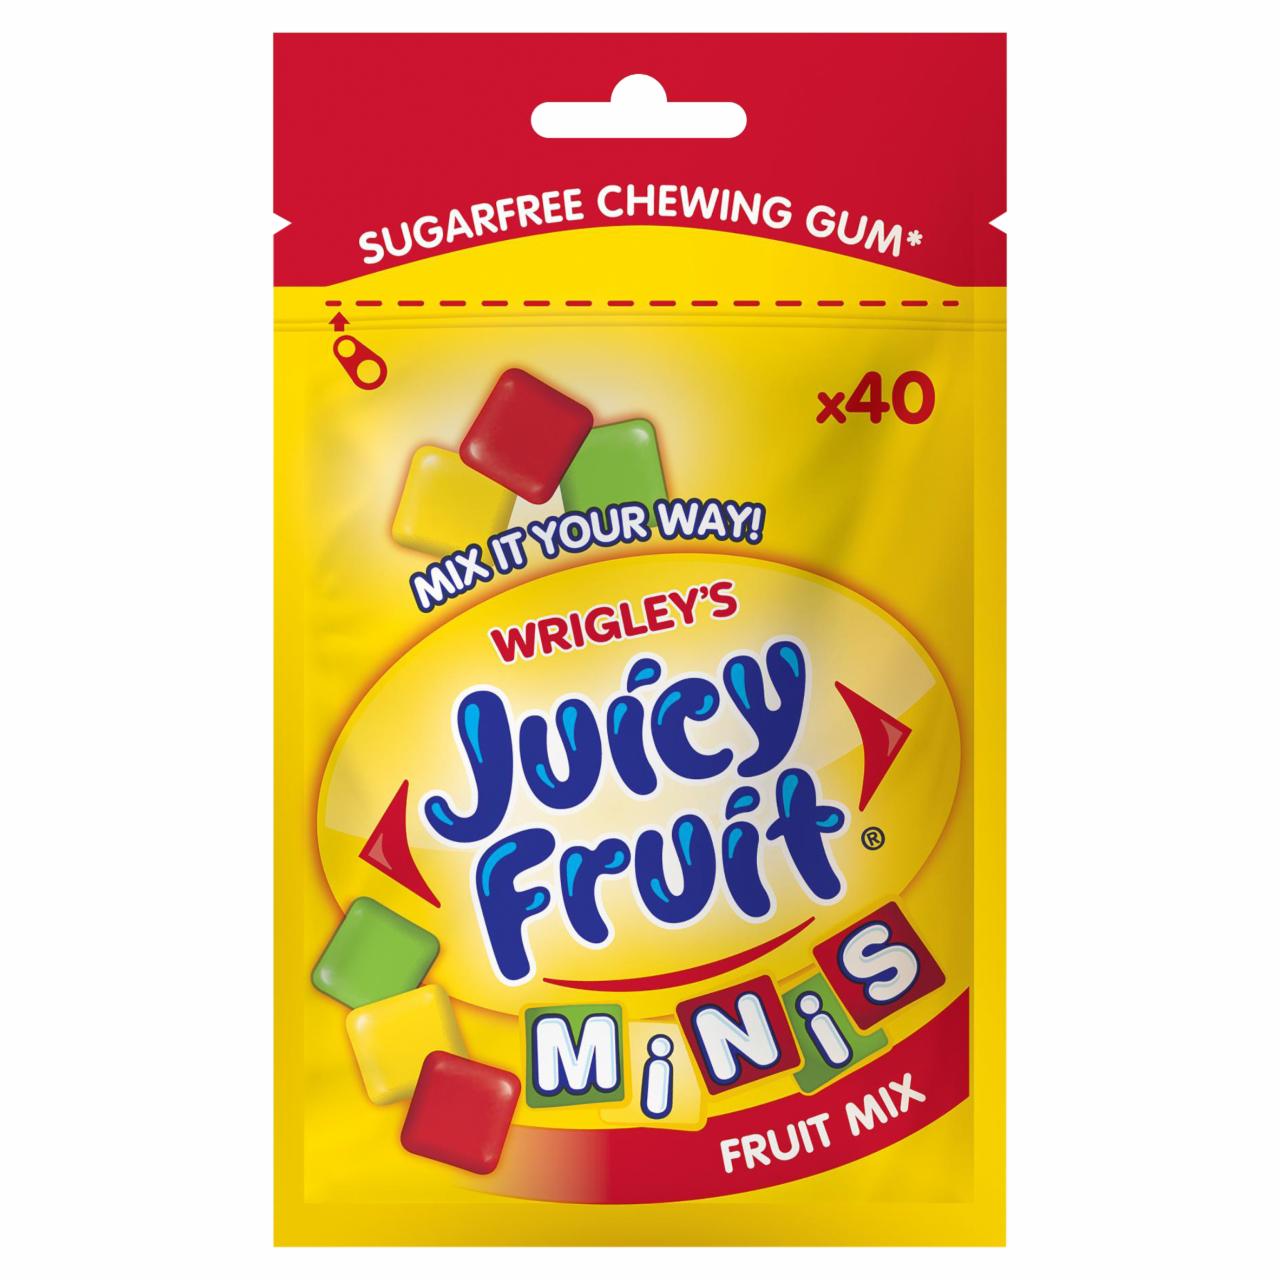 Képek - Juicy Fruit Minis Fruit Mix gyümölcsízű rágógumi 28 g